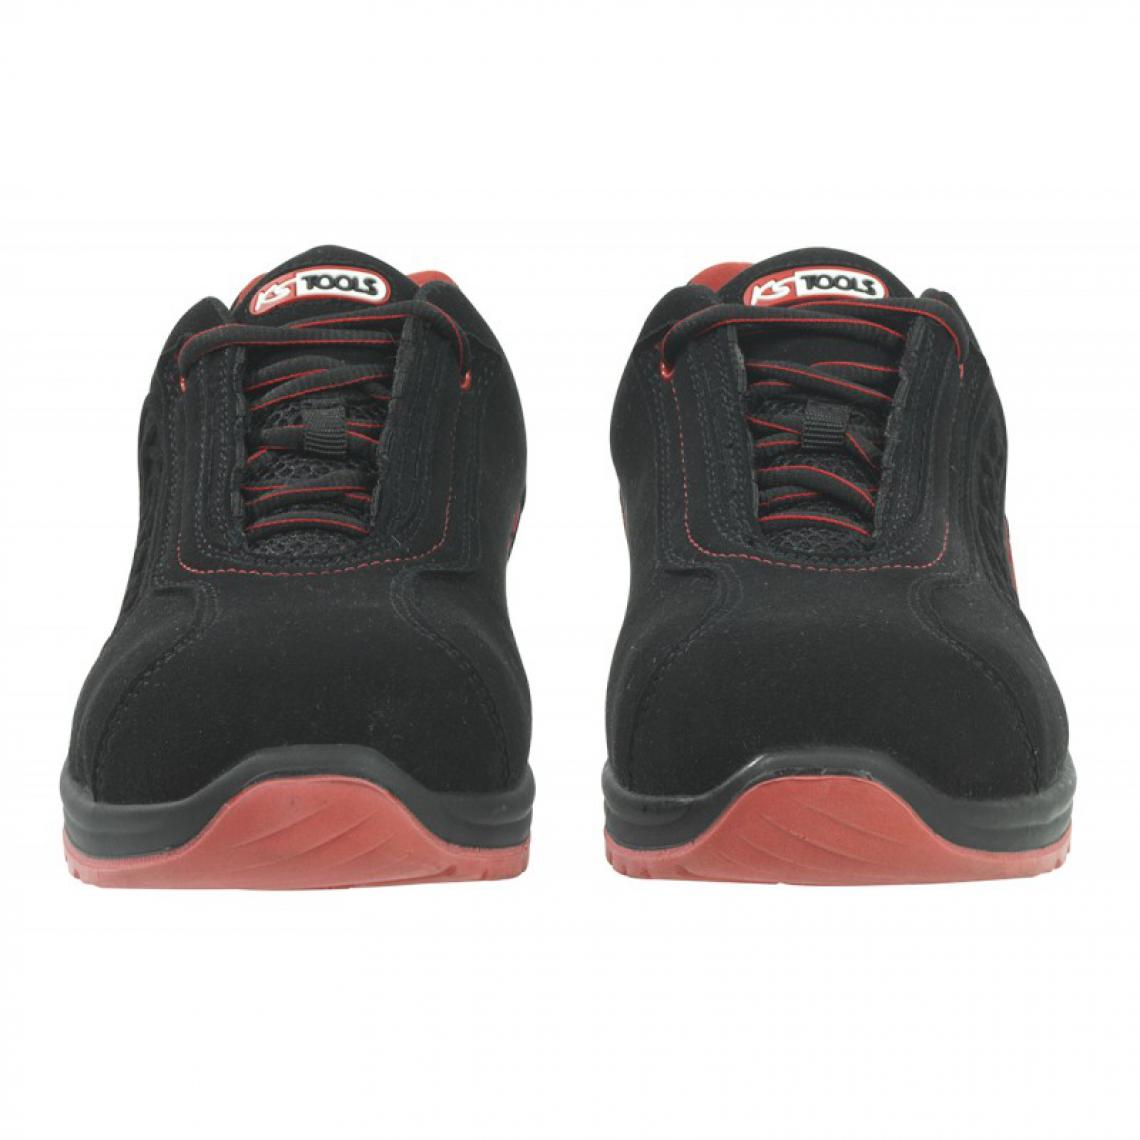 Kstools - Chaussures de sécurité KSTOOLS Couleur noire rouge taille 46 - Equipement de Protection Individuelle